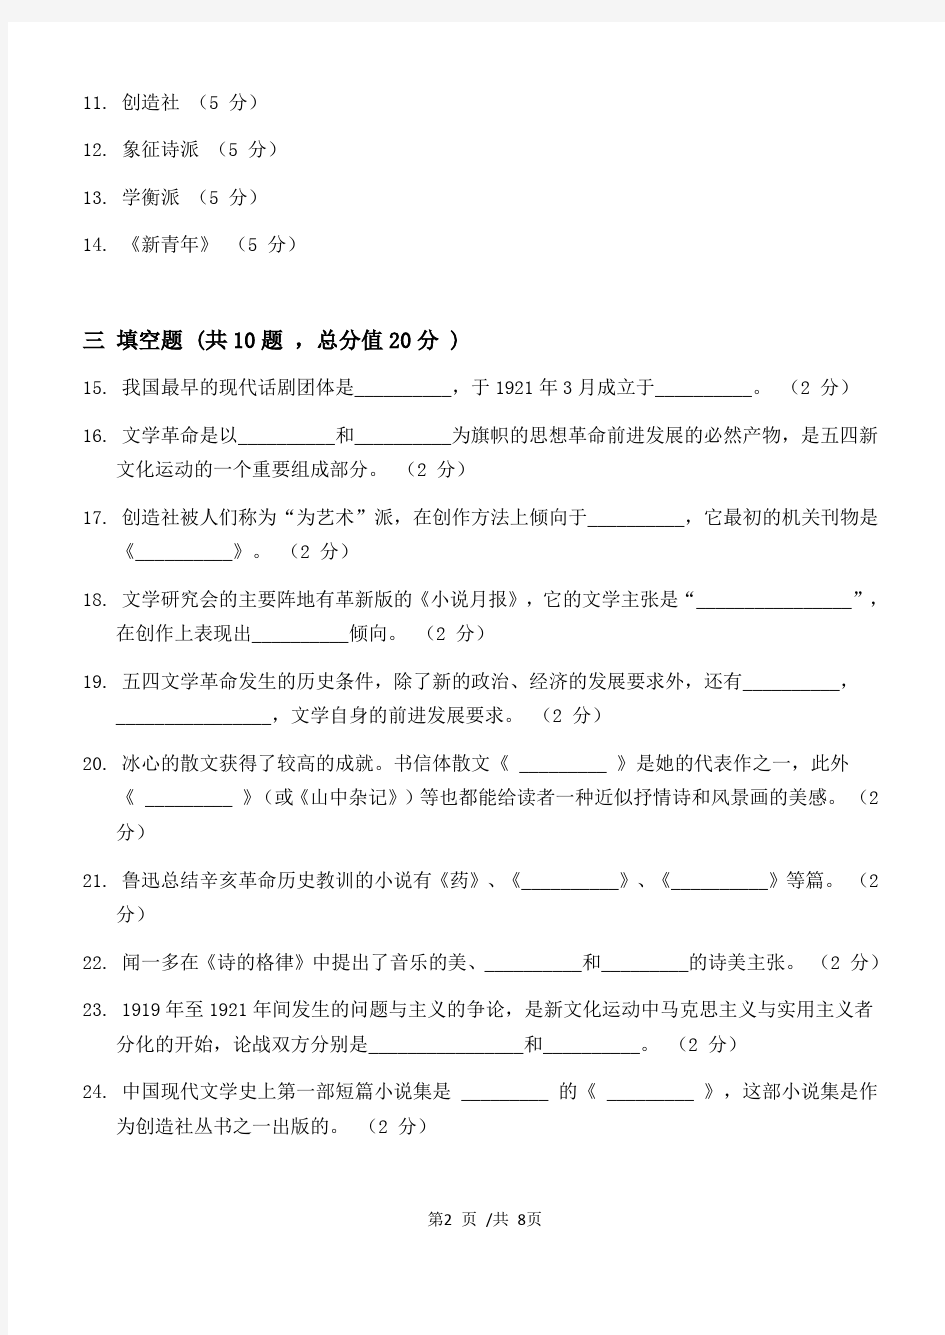 中国现代文学第1阶段练习题江大考试题库及答案一科共有三个阶段,这是其中一个阶段。答案在最